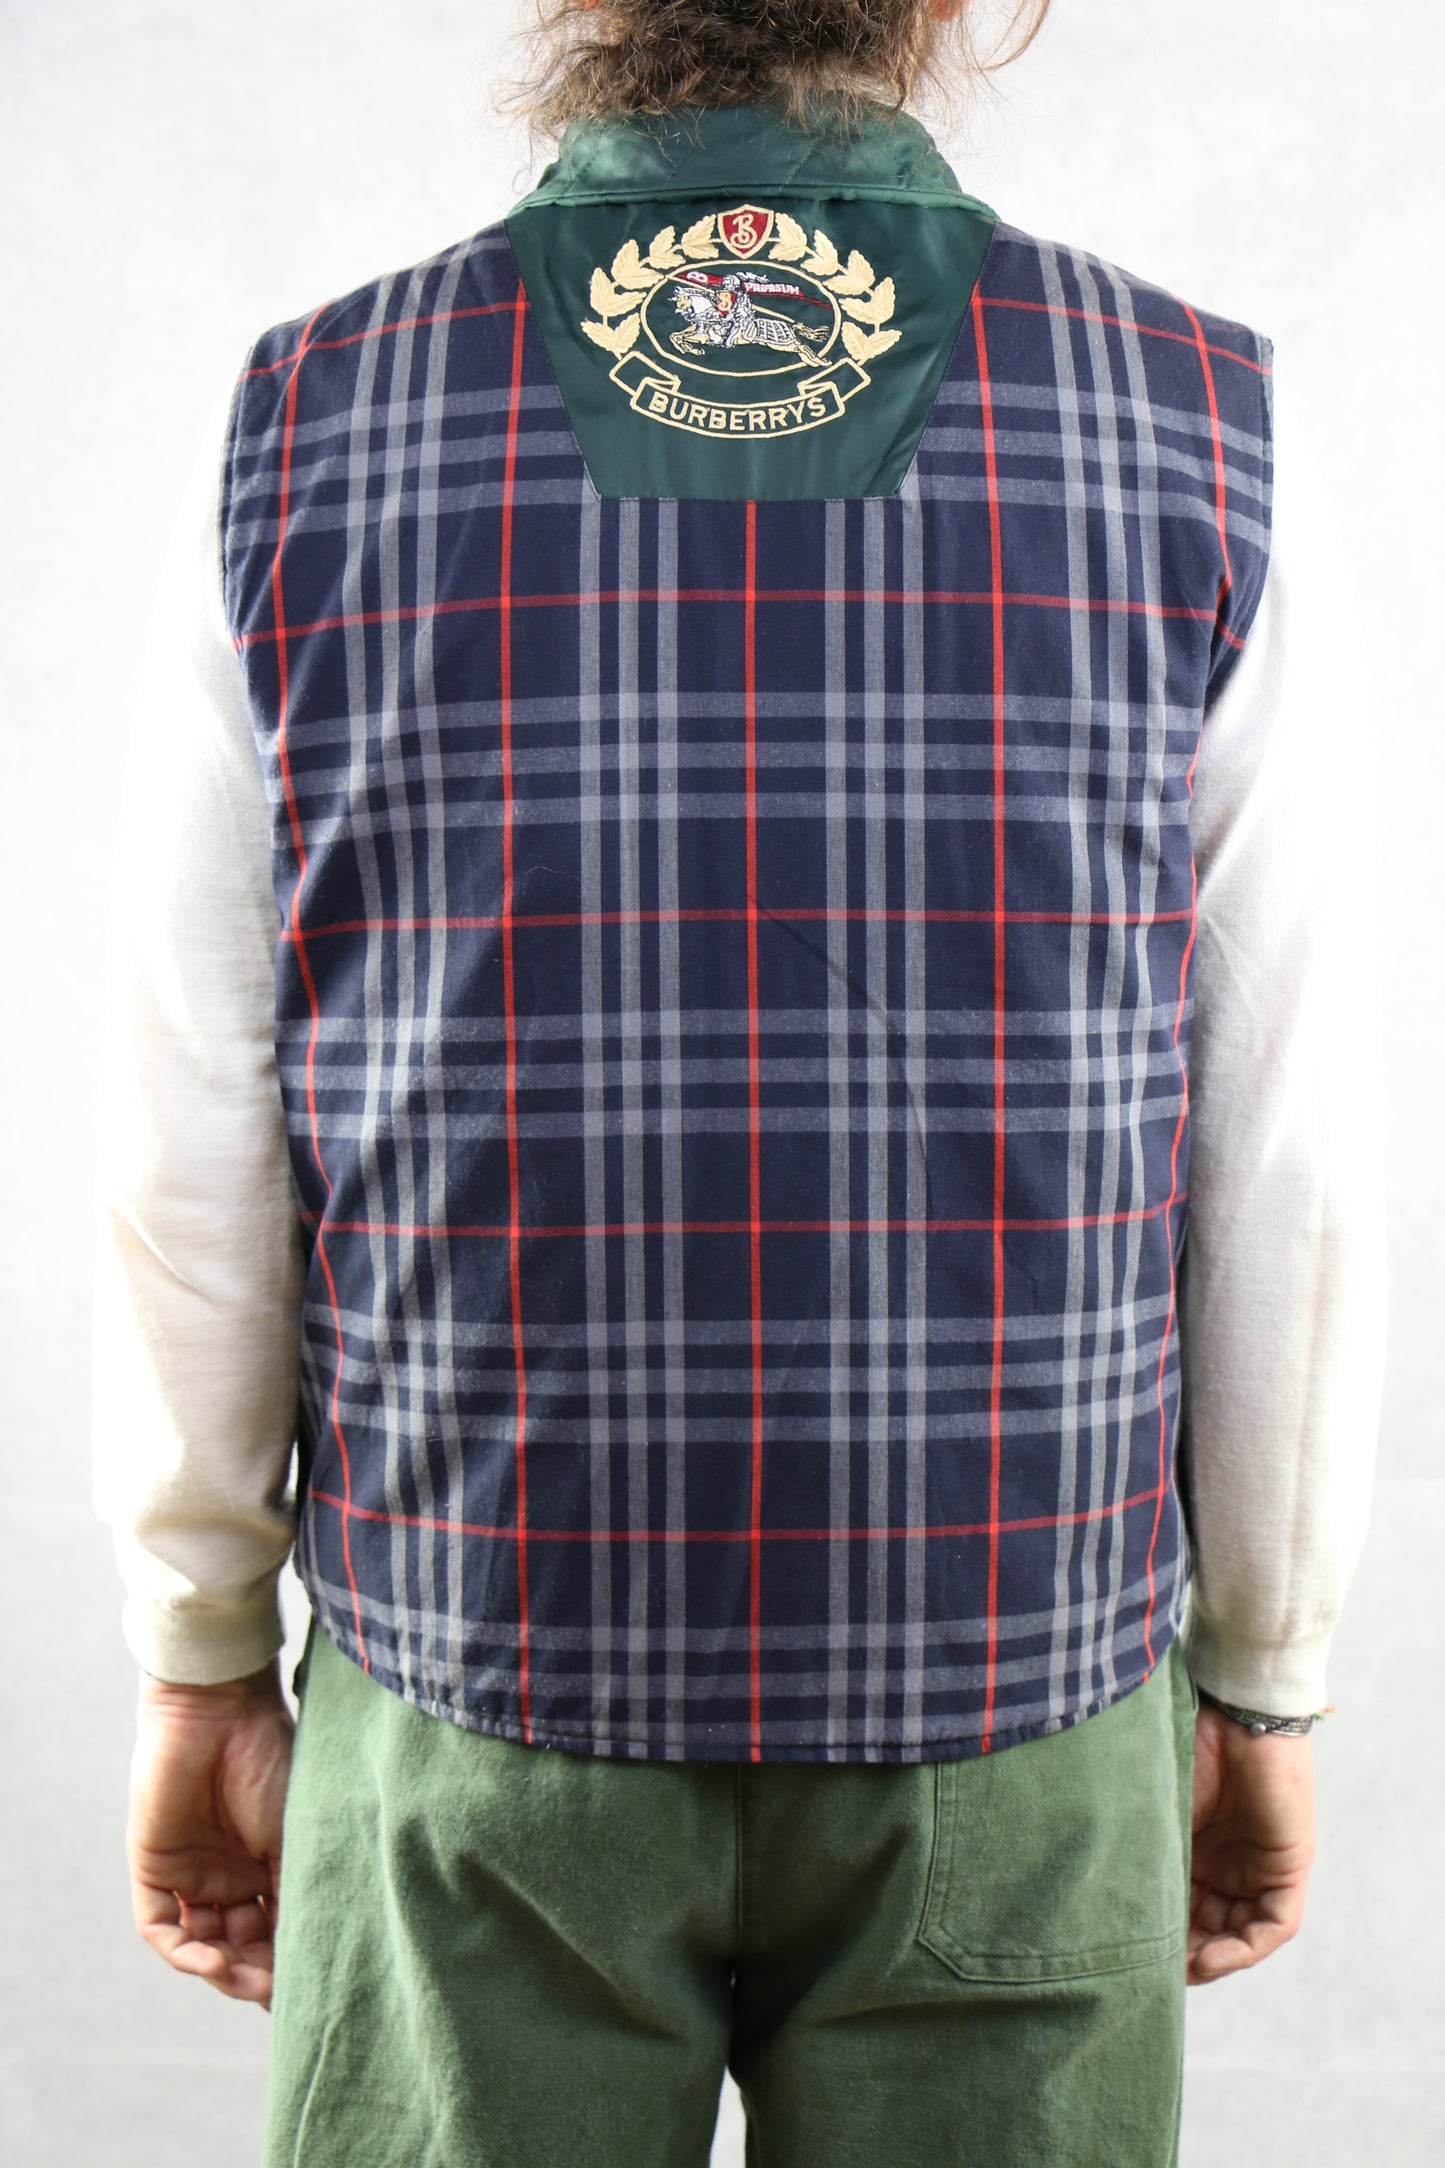 Burberrys' Vest Duble Face - vintage clothing clochard92.com